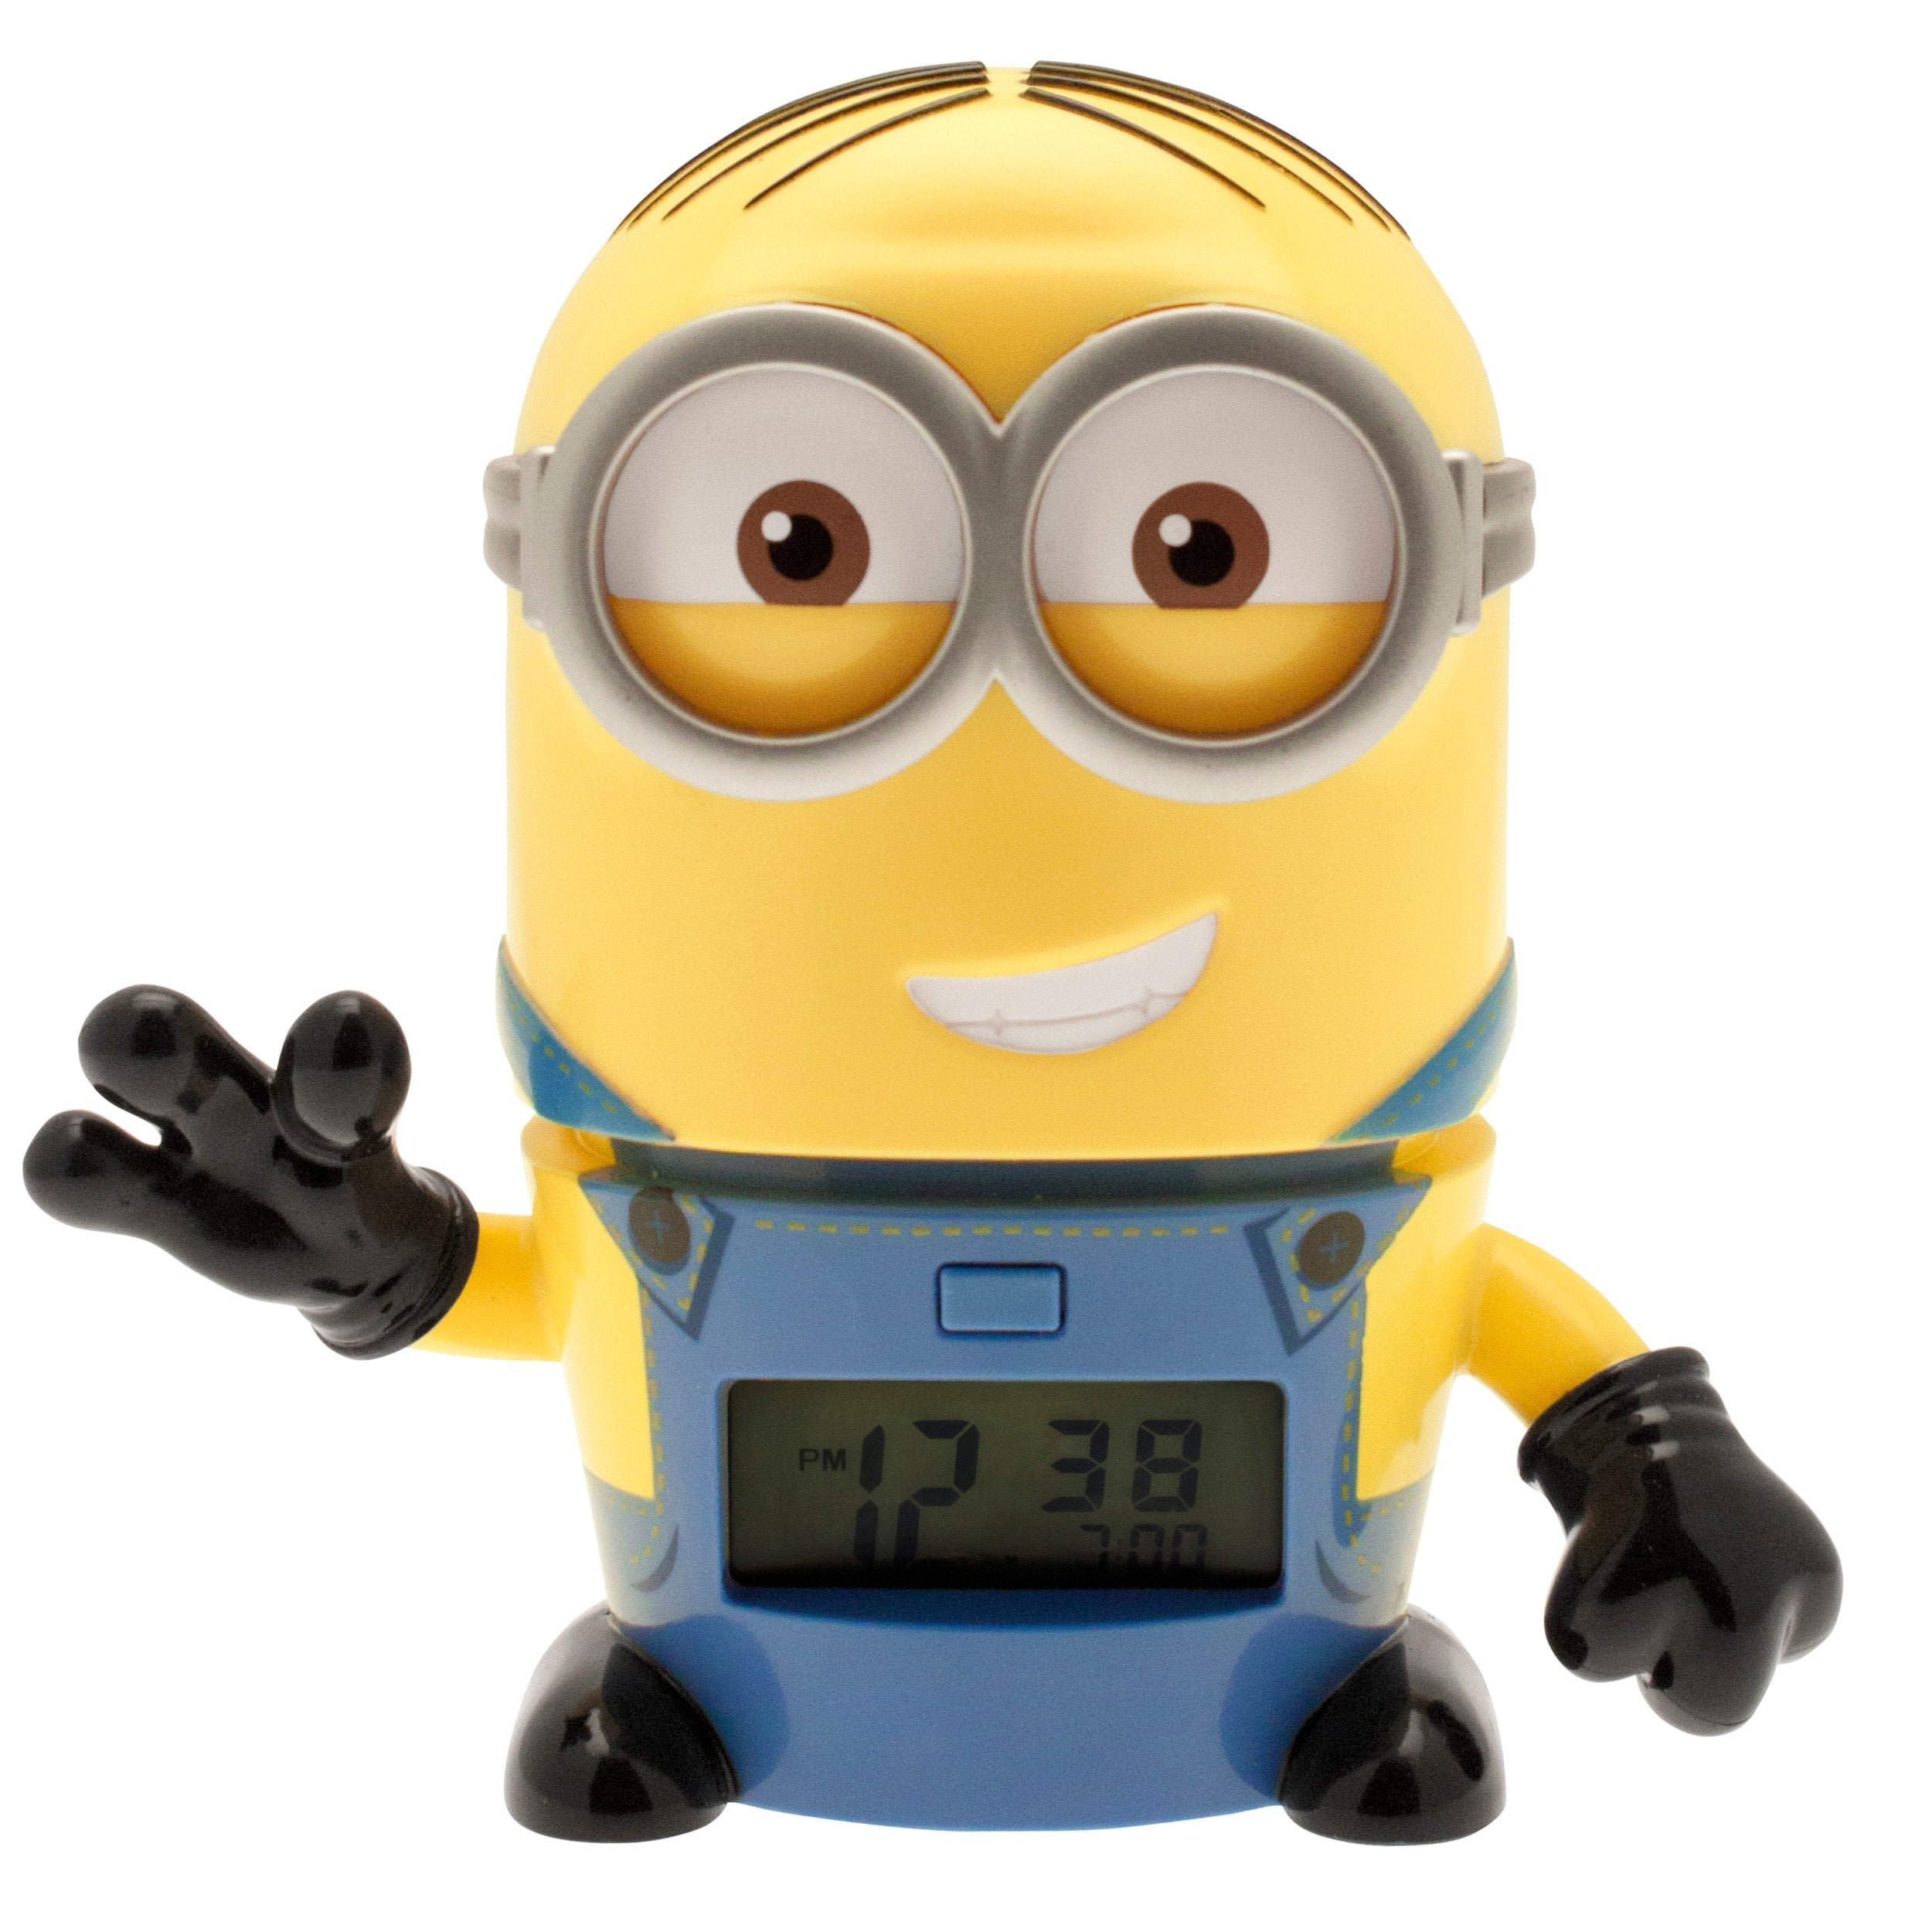 Minnions mini alarm clock 